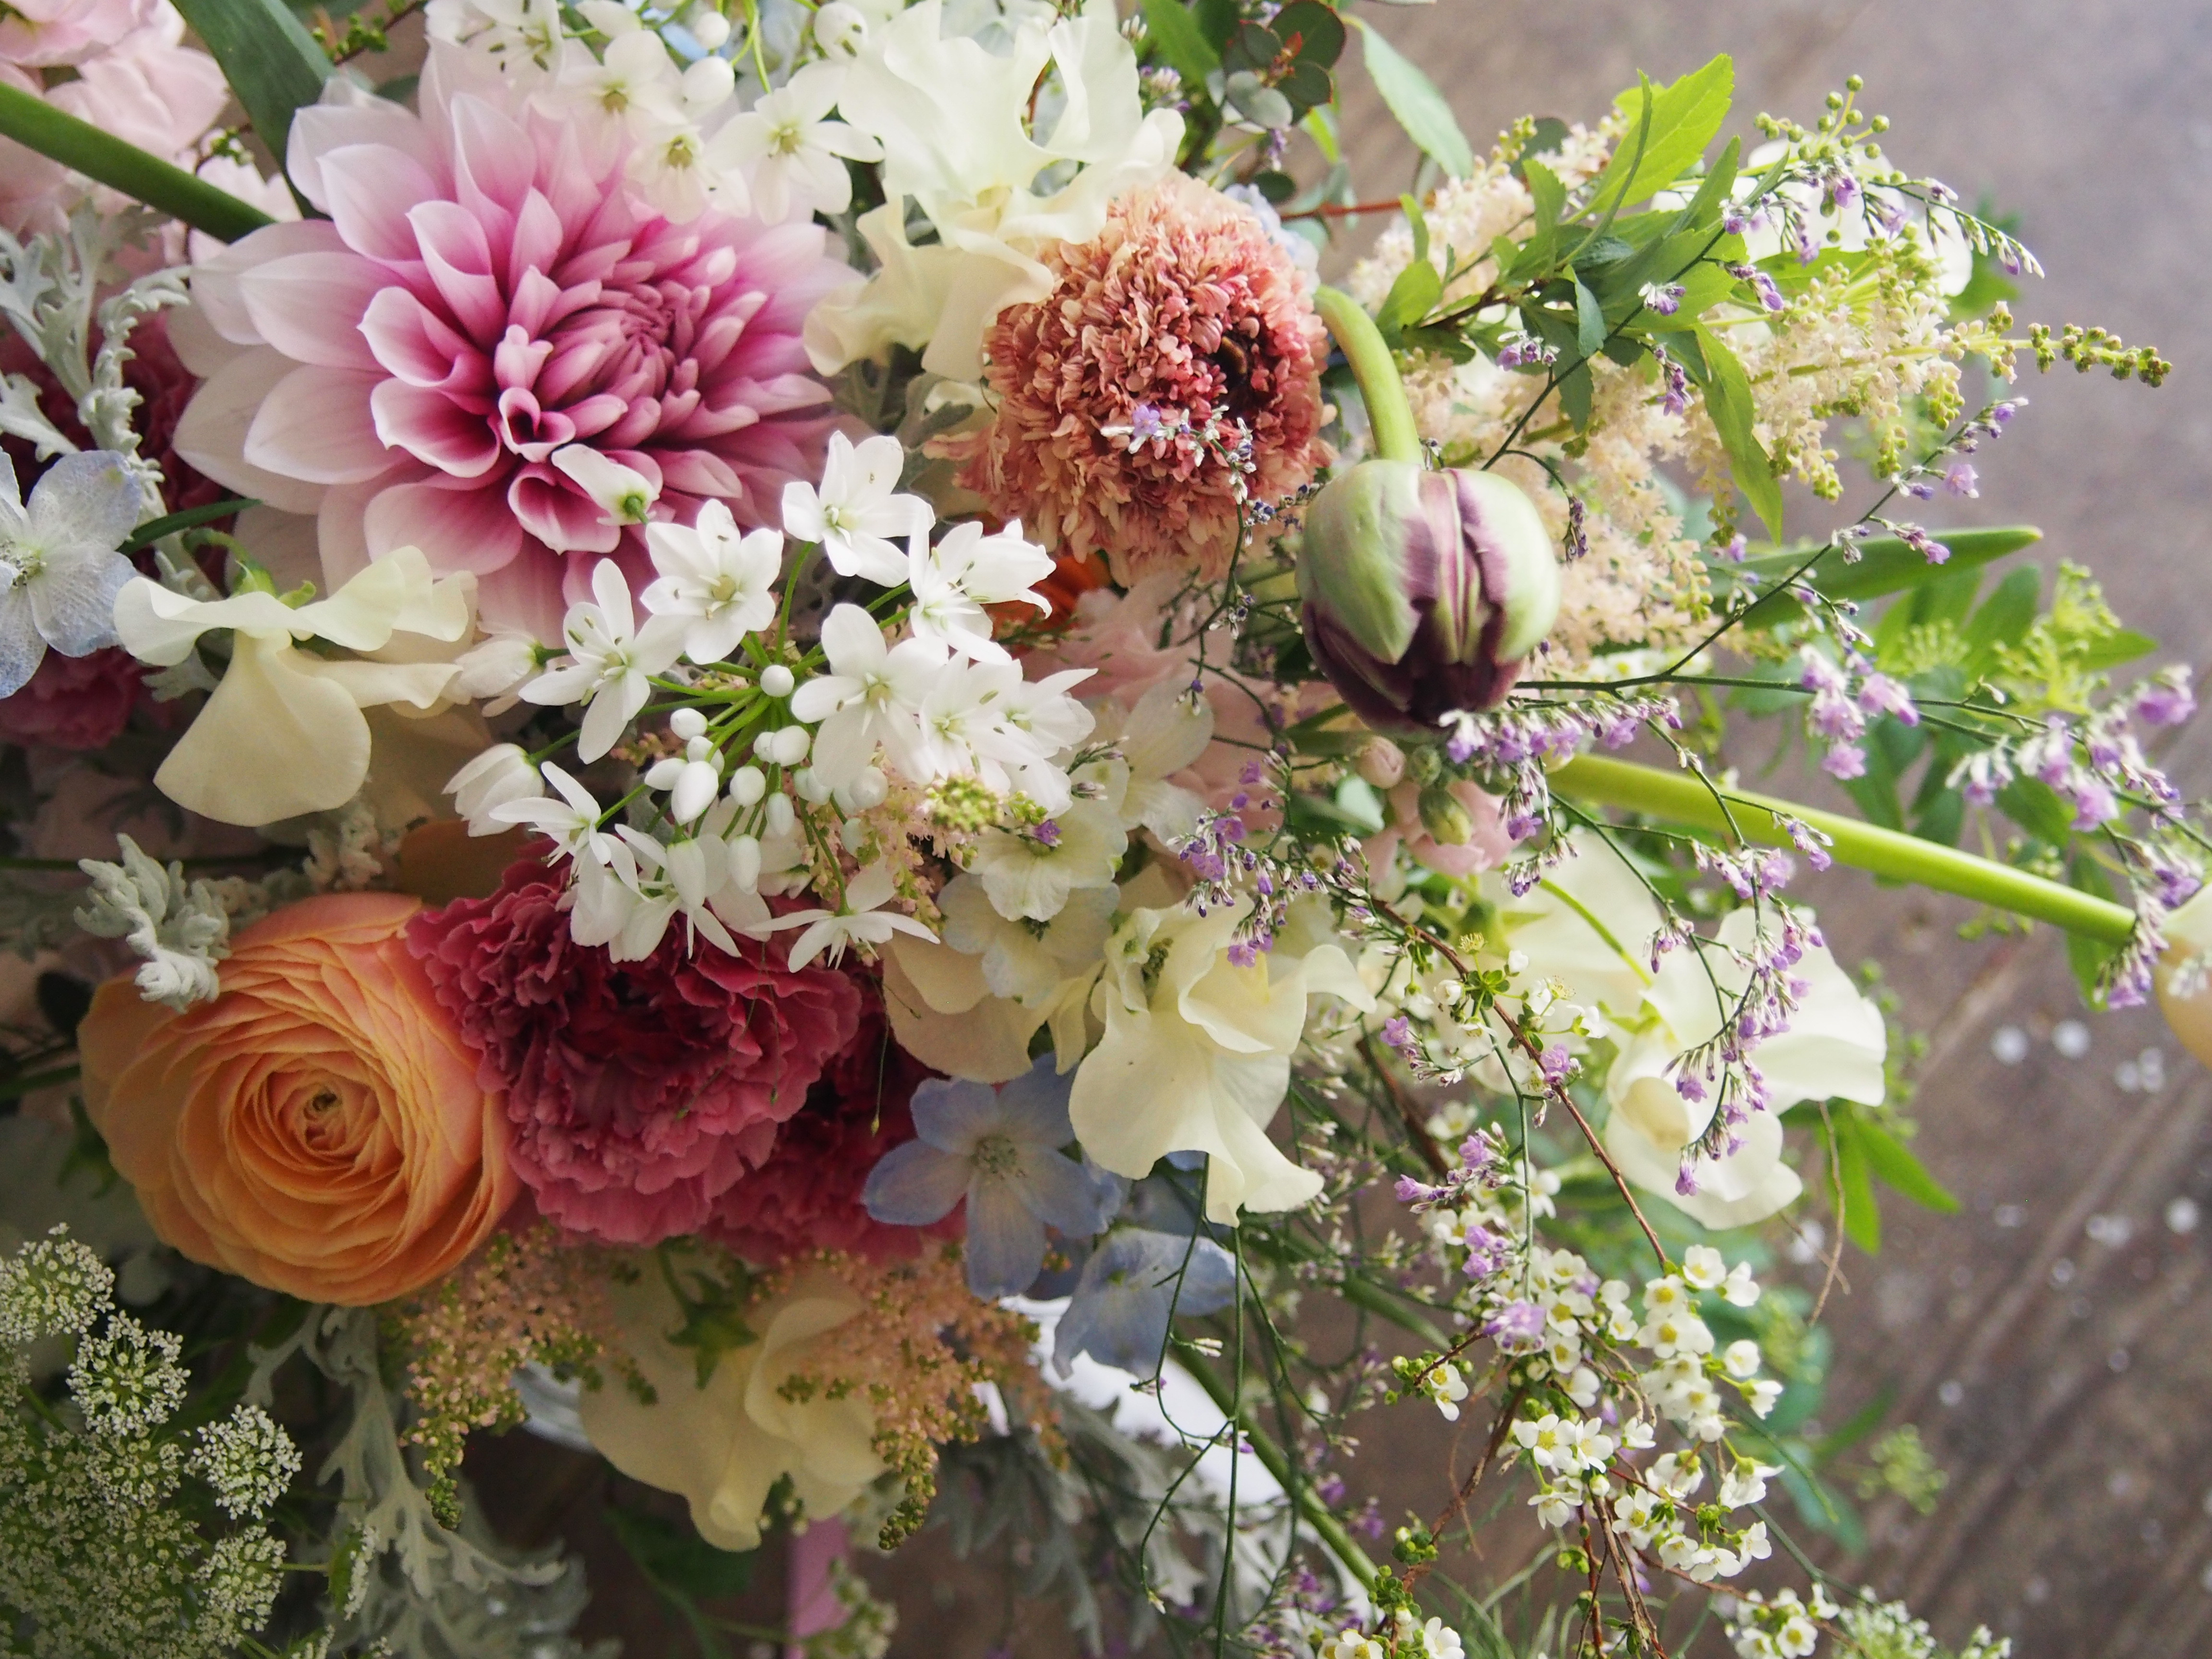 ウエディング 福岡中央区舞鶴の花屋tecapo テカポ ギフトの花束や結婚式のお花など季節のお花でお届けします